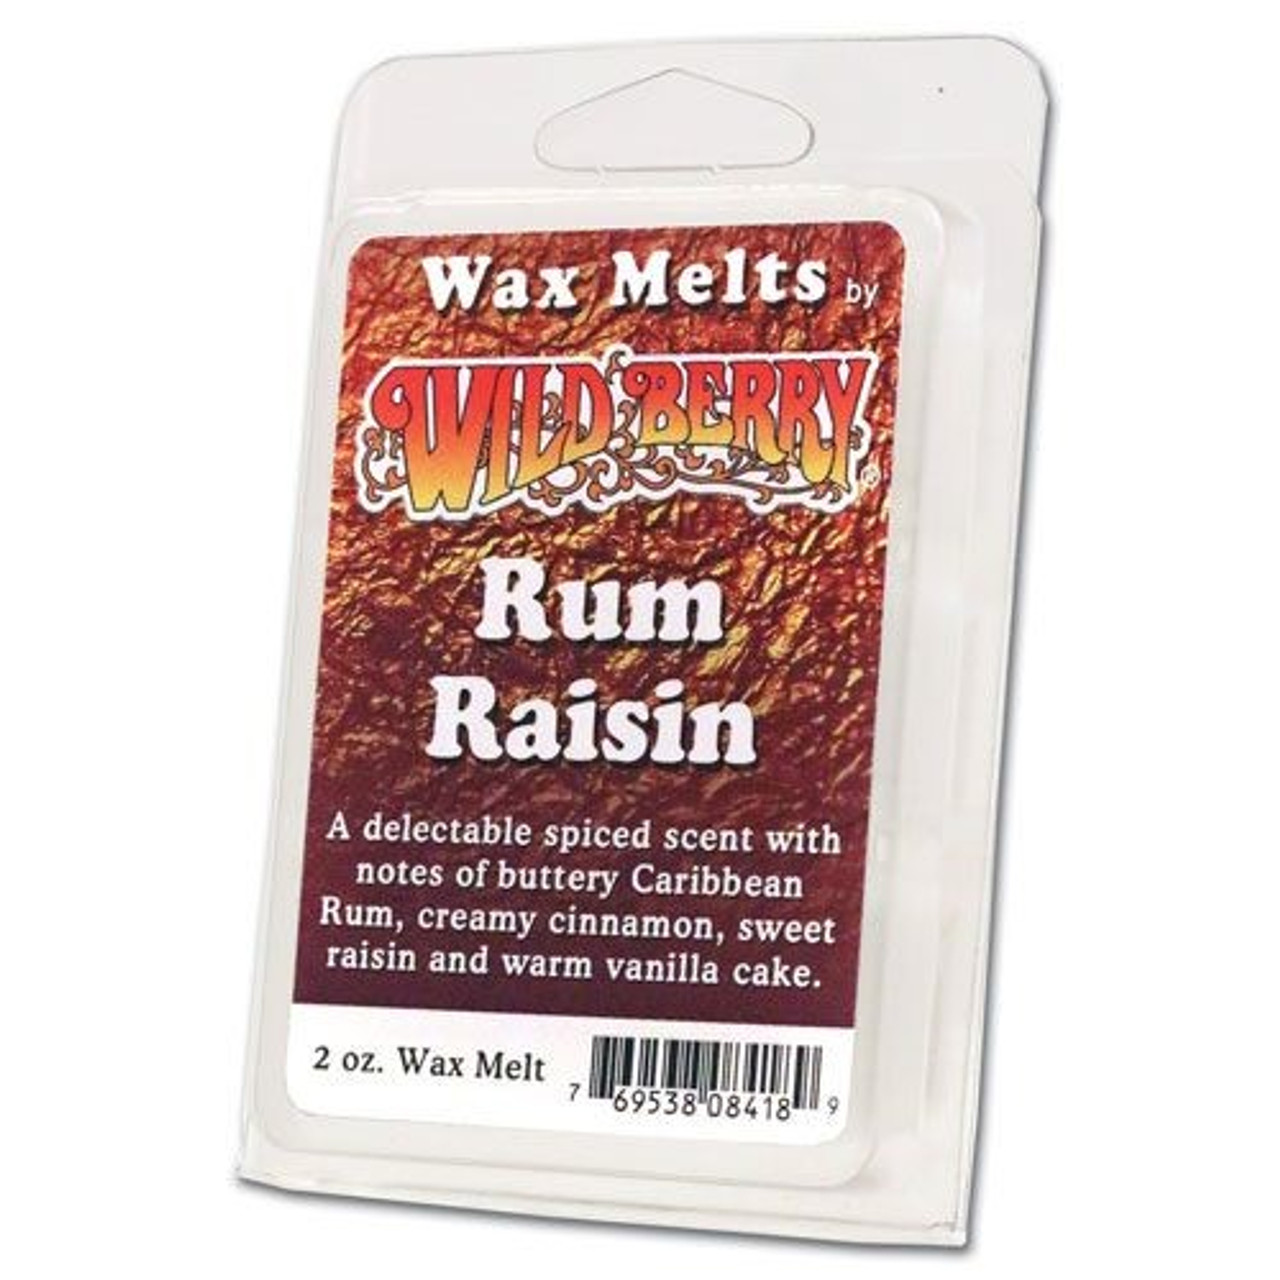 Wildberry Wax Melts - Rum raisin